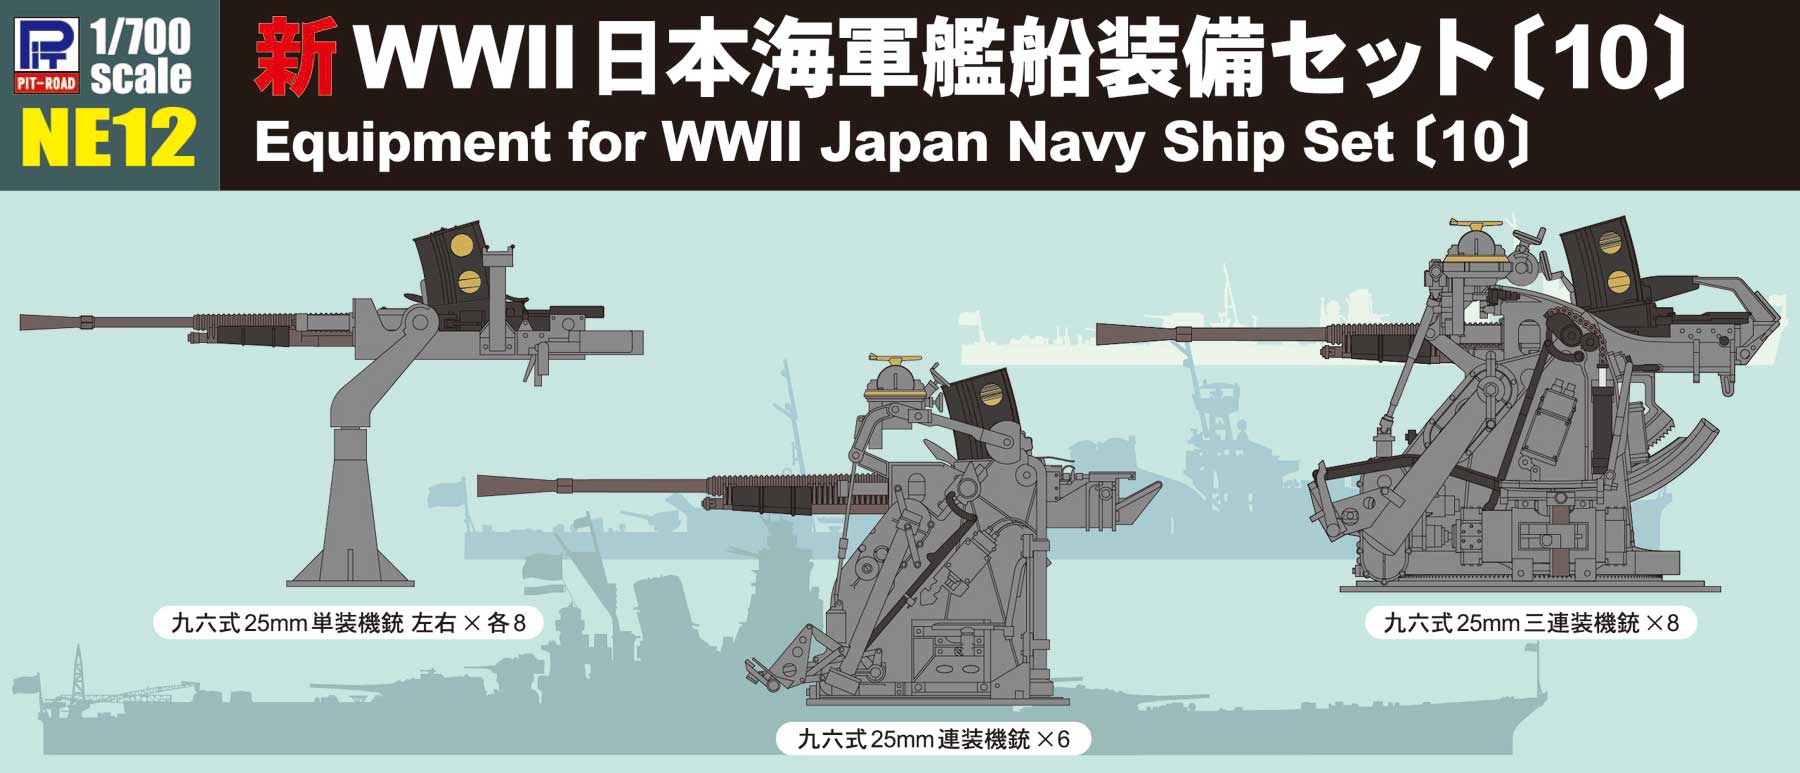 1/700 新WWII 日本海軍艦船装備セット〔10〕 [NE12] - 1,760円